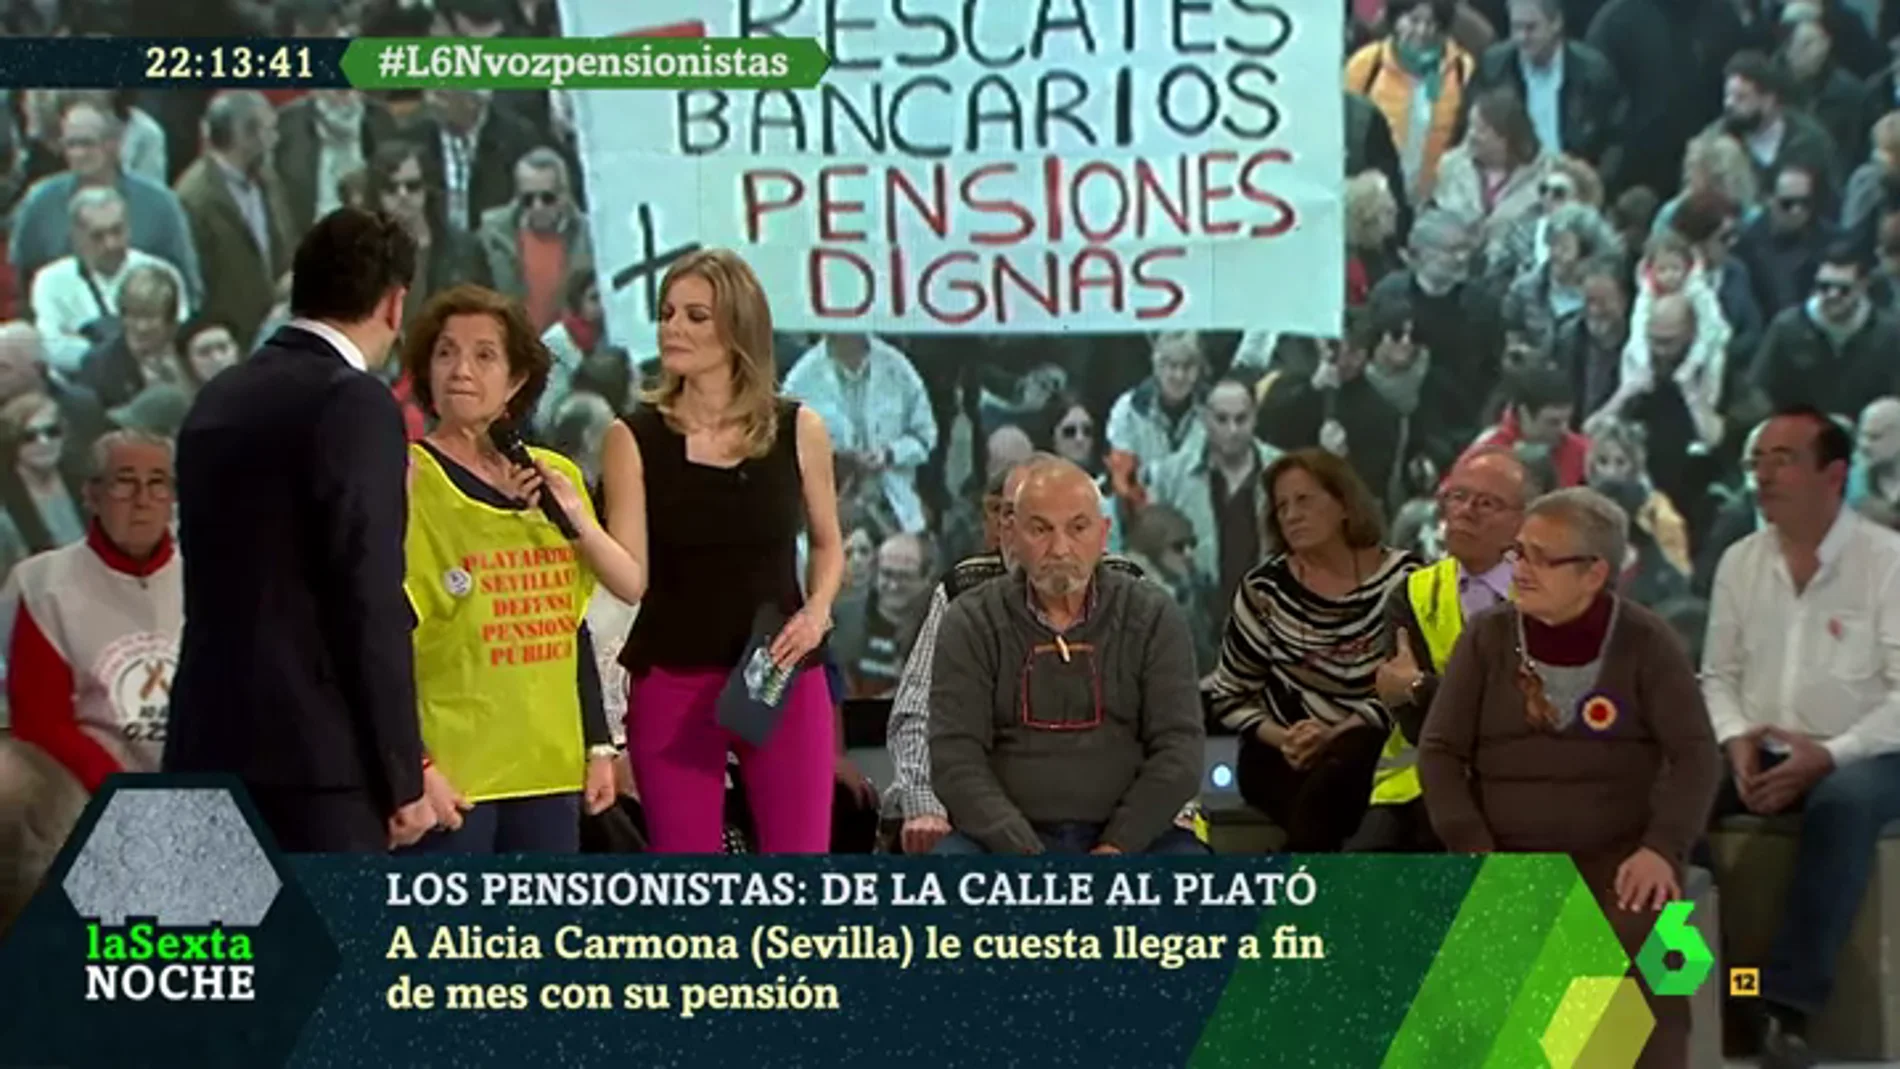 Alicia Carmona, pensionista